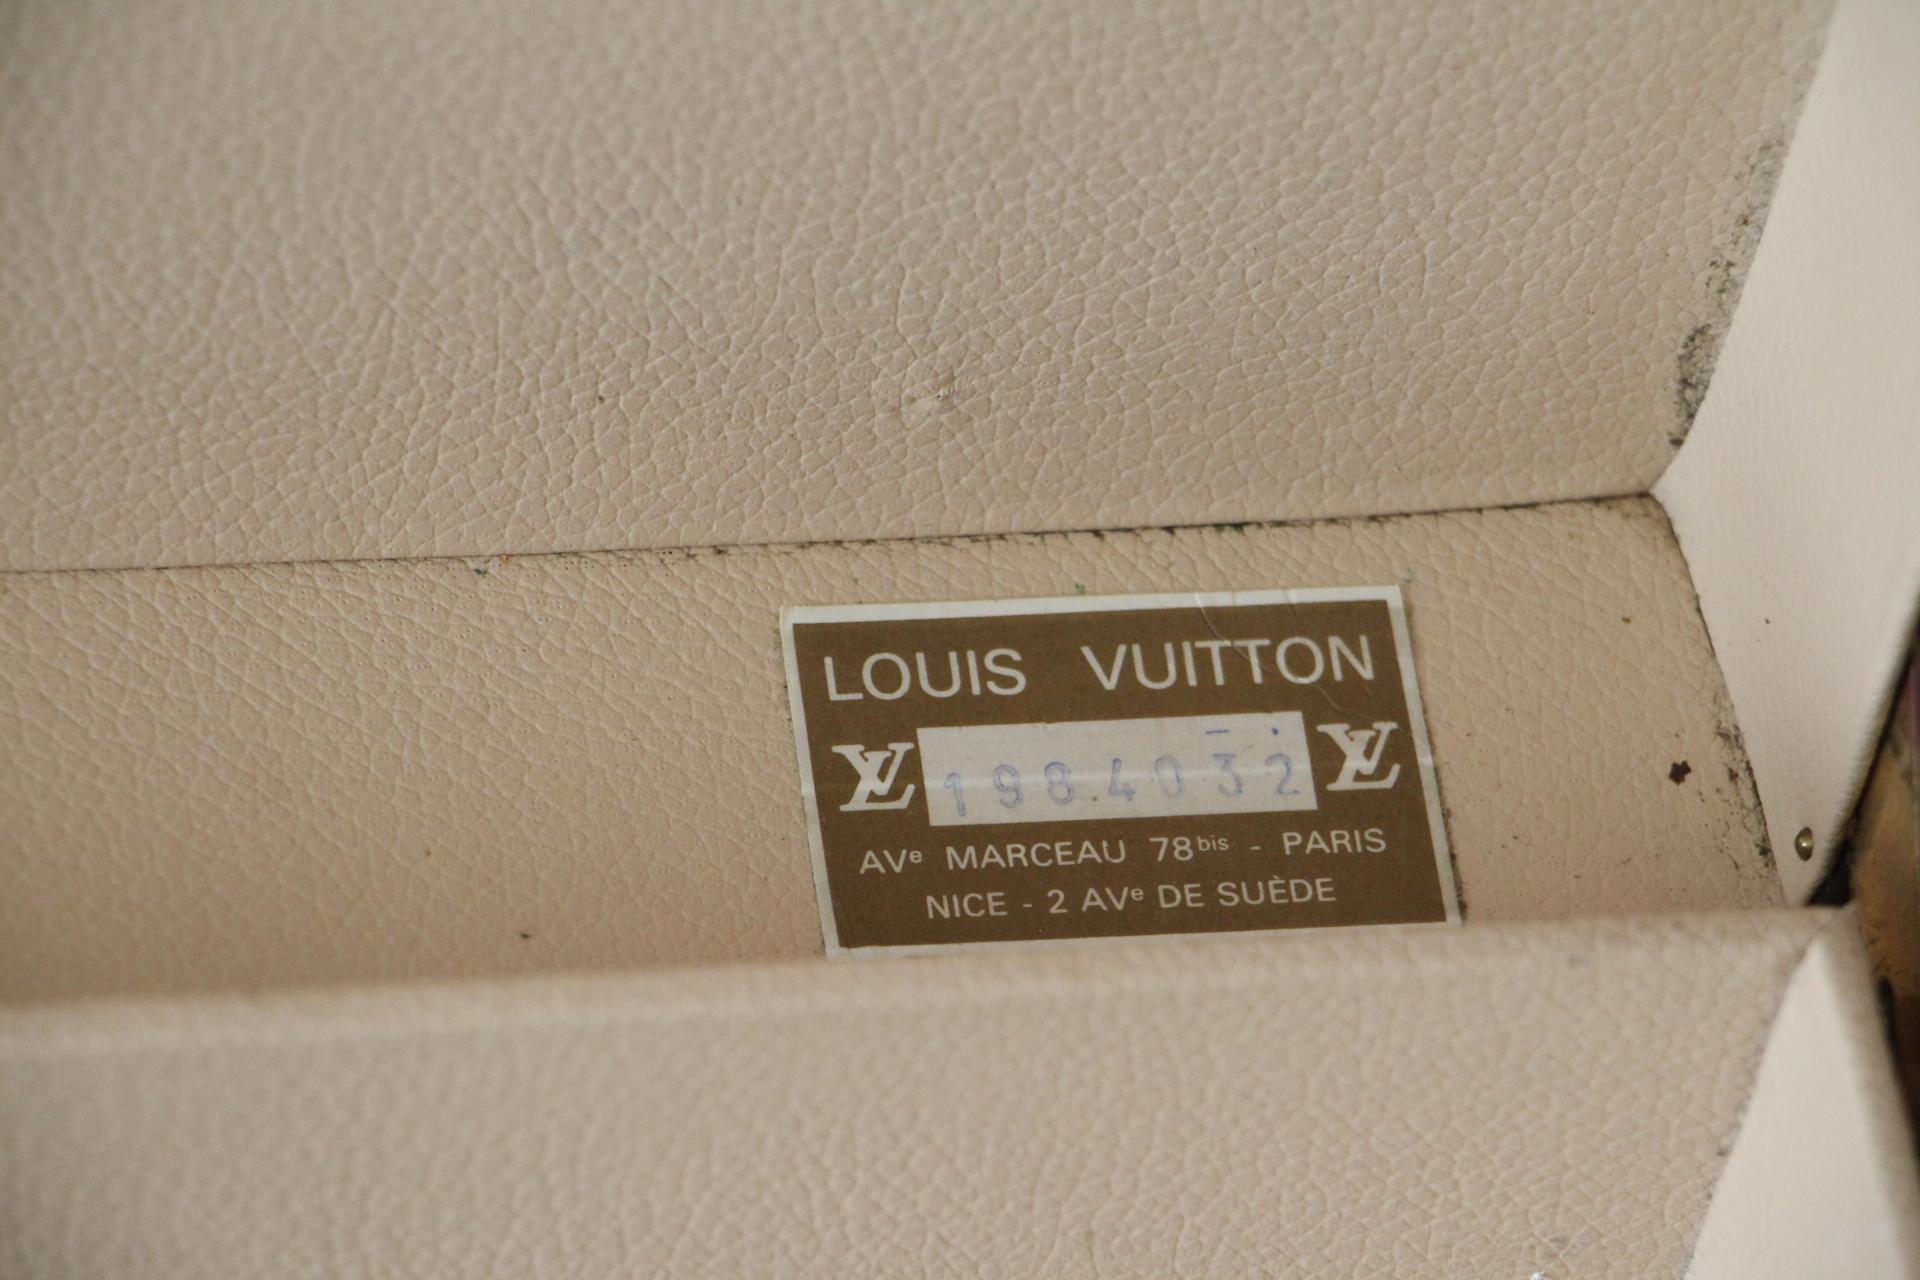  Louis Vuitton Suitcase, Alzer 80 Louis Vuitton Suitcase, Large Vuitton Suitcase 10